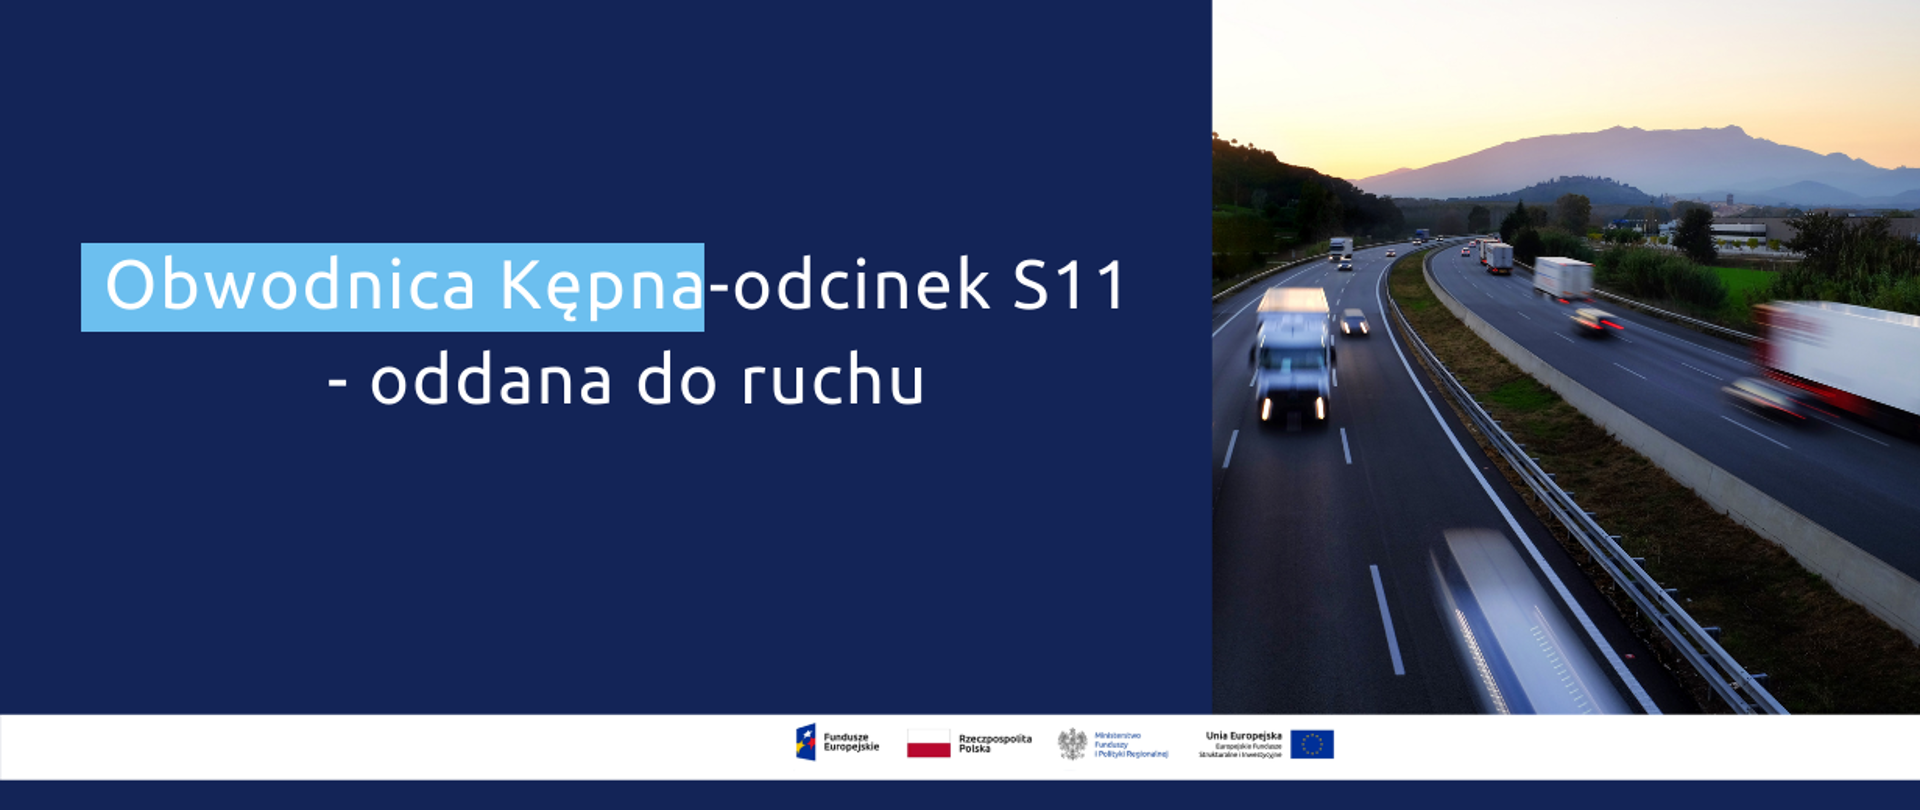 Napis: Obwodnica Kępna - odcinek S11 - oddana do ruchu. Obok zdjęcie trasy szybkiego ruchu z jadącymi autami.